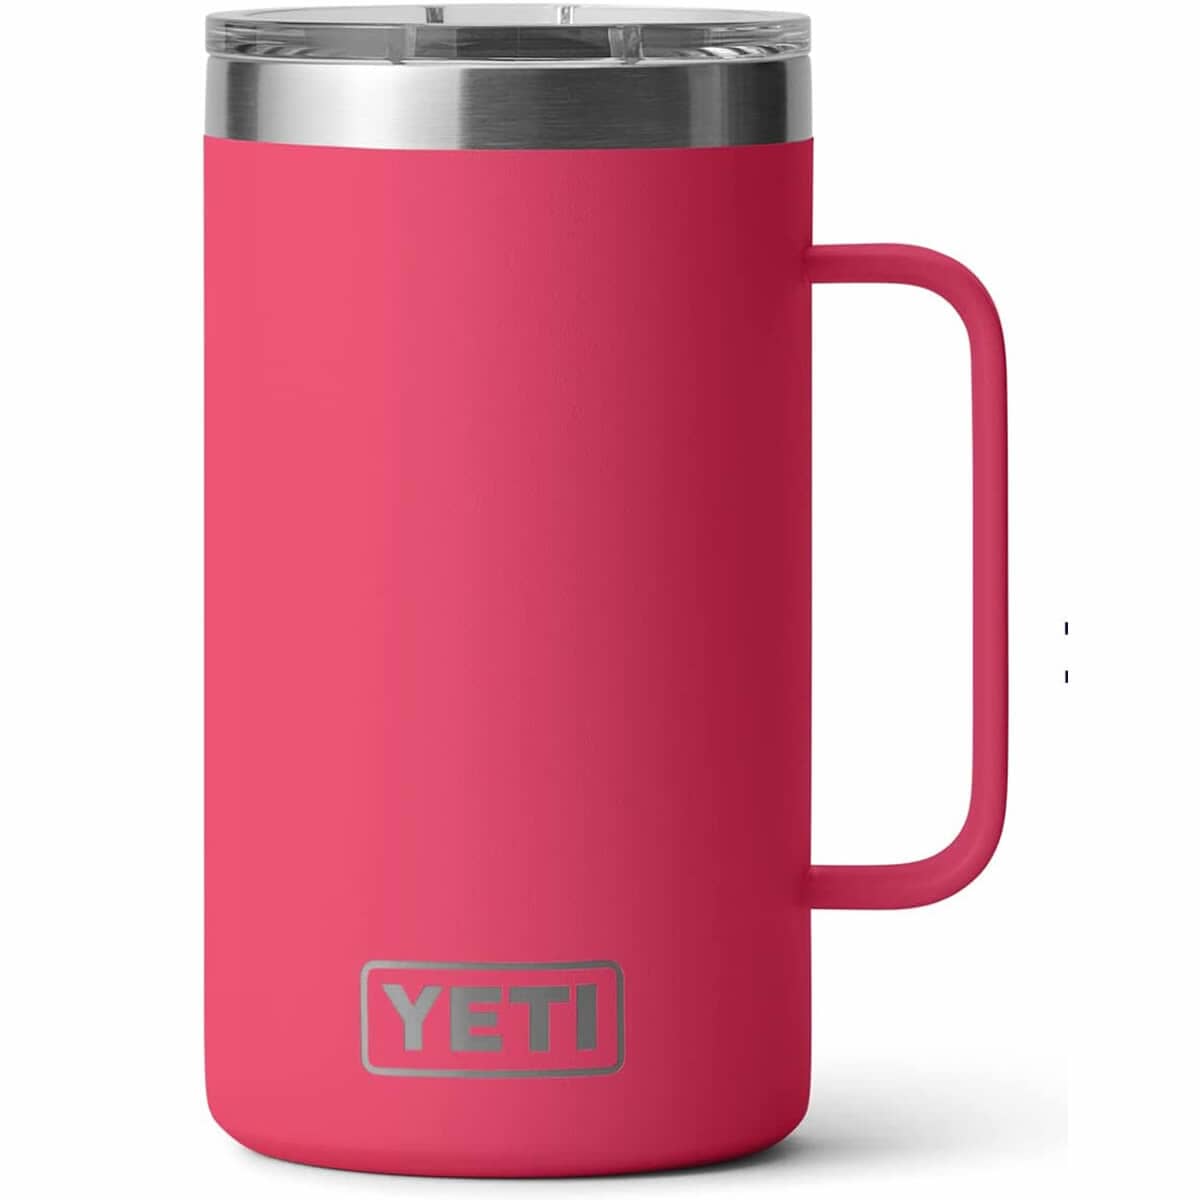 Yeti Rambler 24 Oz Mug Bimini Pink (7000001210) - BBQ World